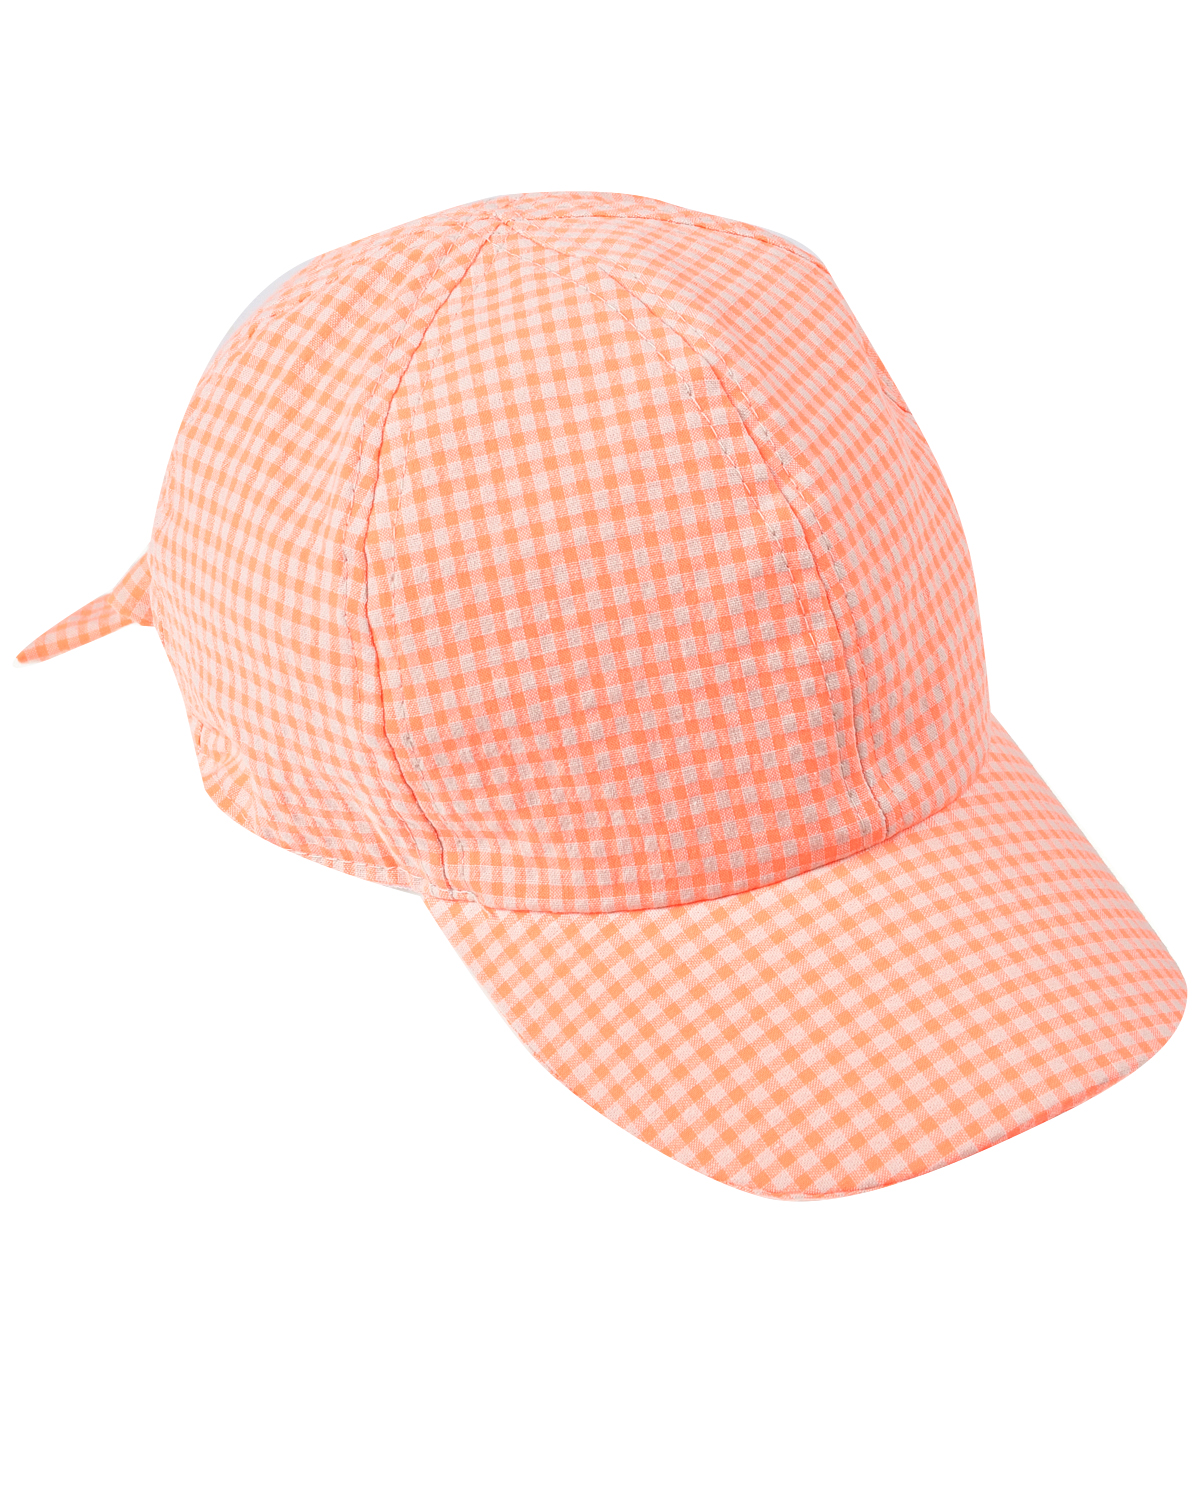 Оранжевая кепка в клетку Catya, размер 52, цвет оранжевый